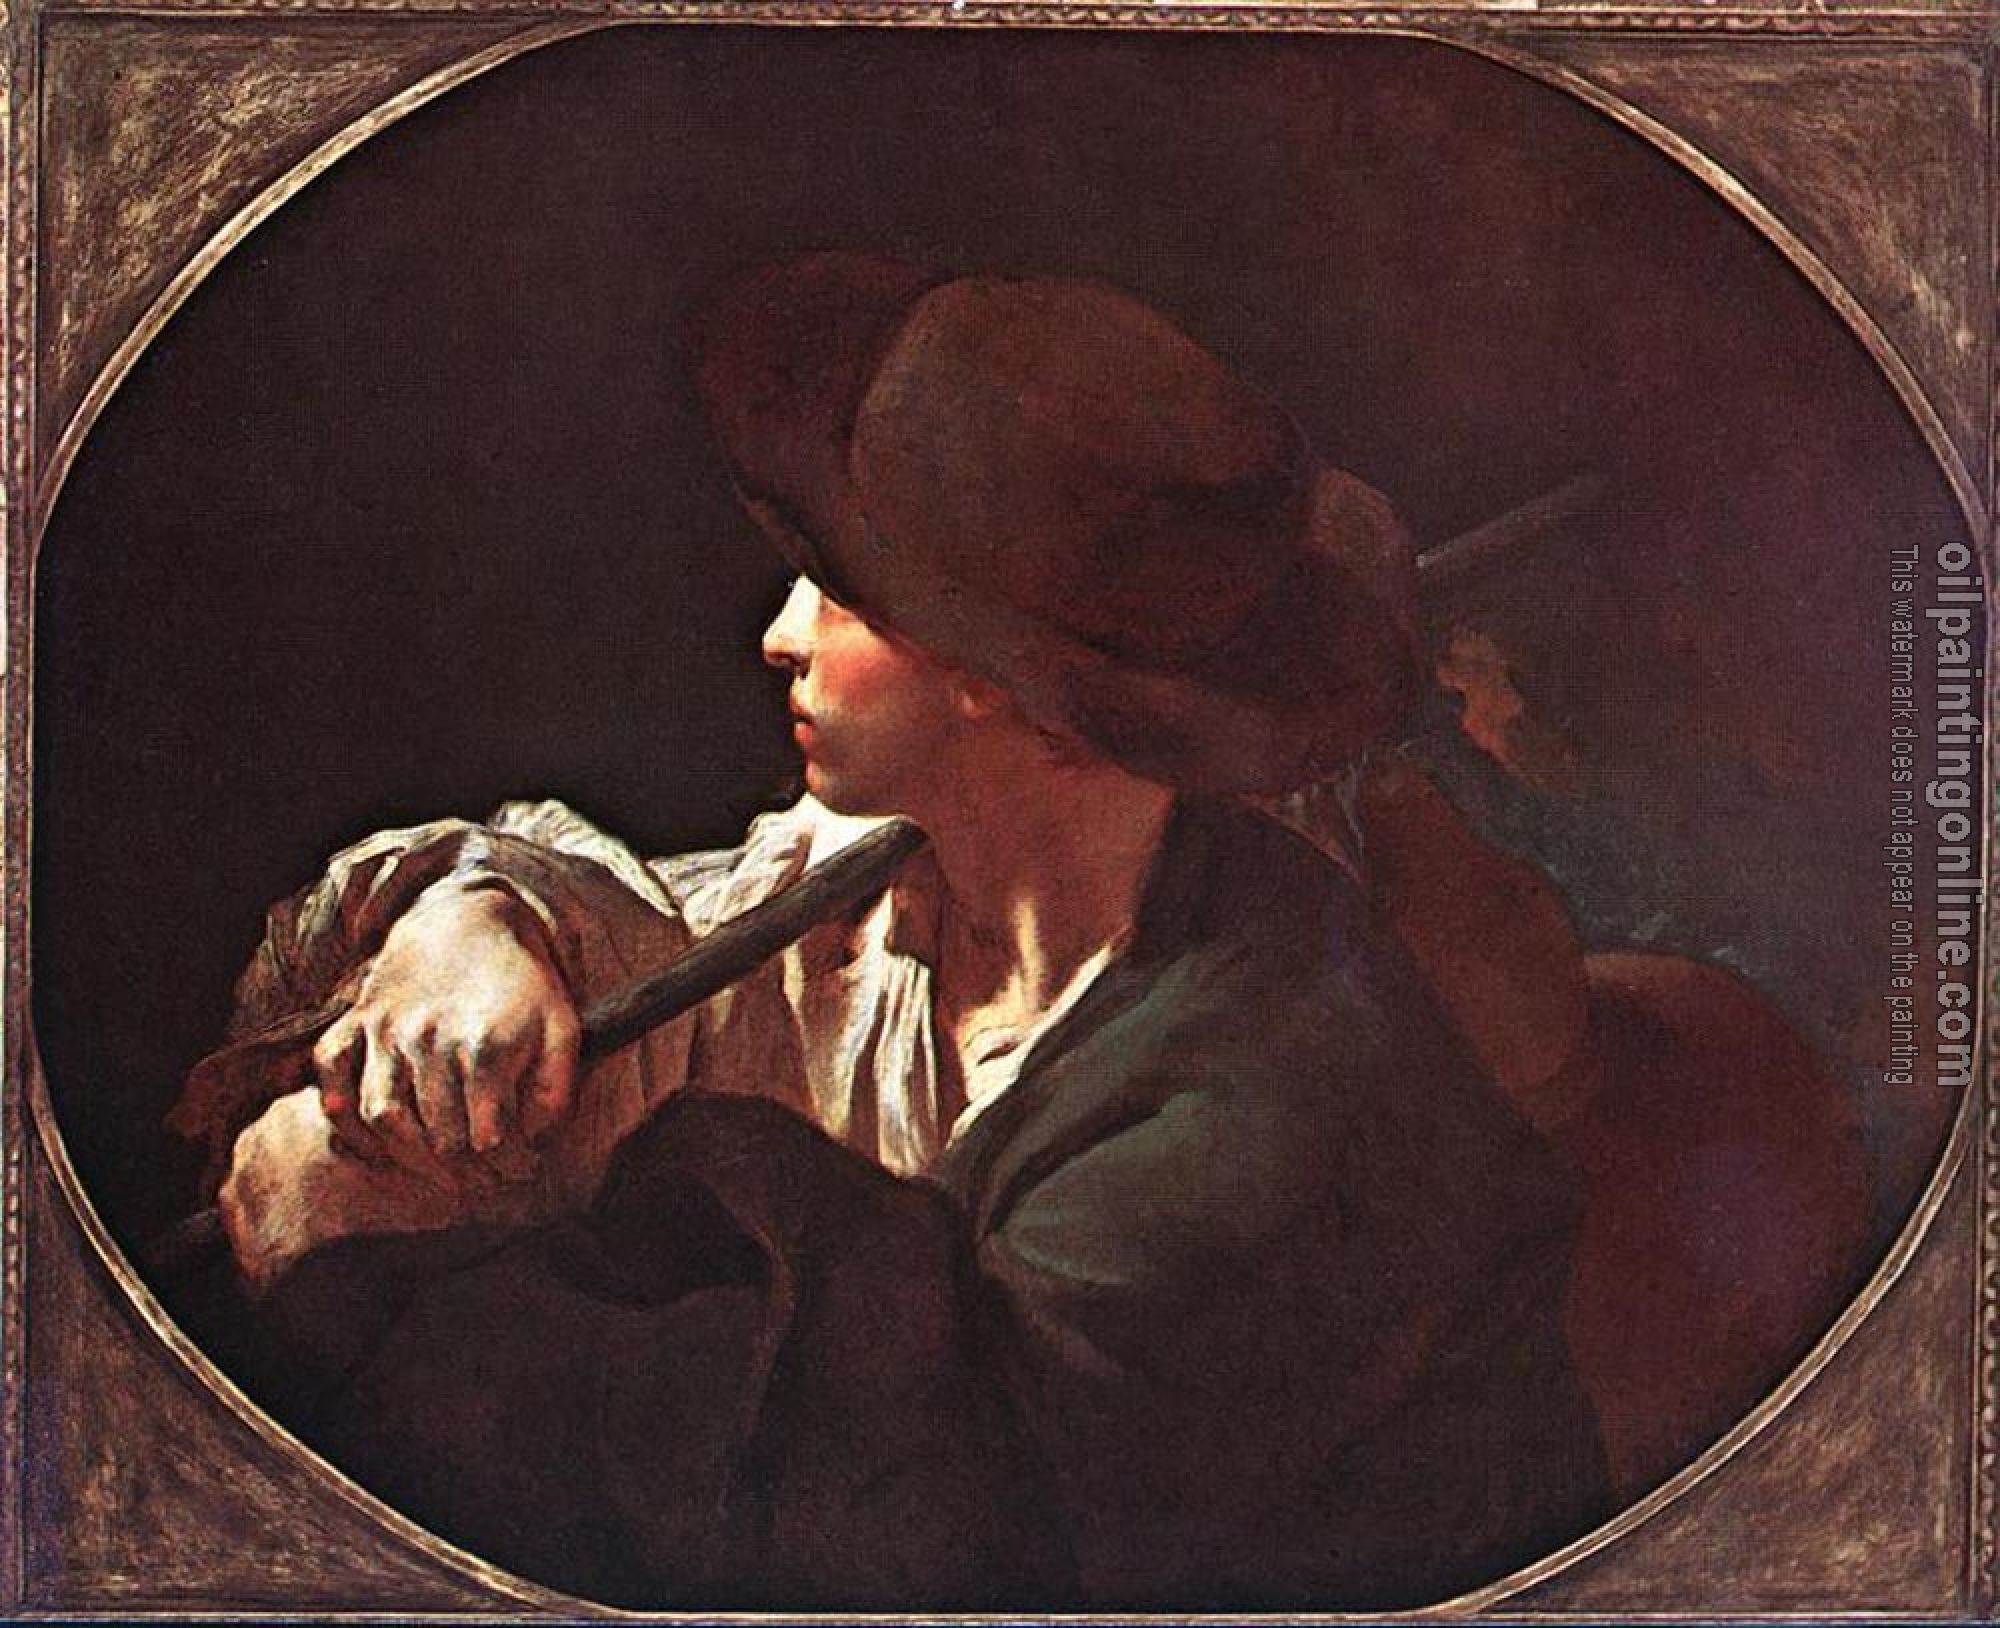 Piazzetta, Giovanni Battista - Shepherd Boy